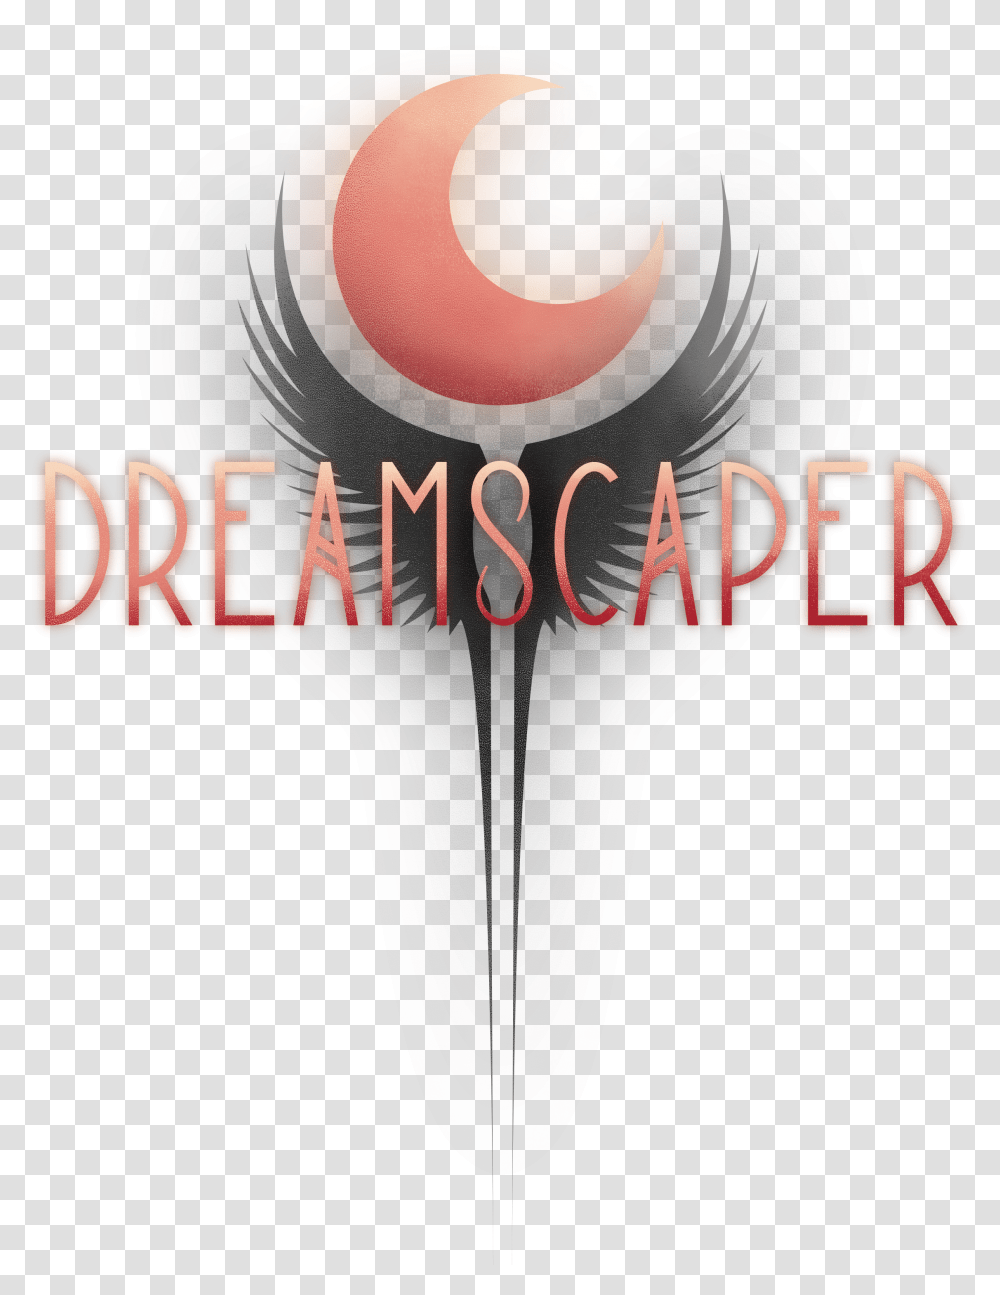 Afterburner Studios Dreamscaper Logo Transparent Png